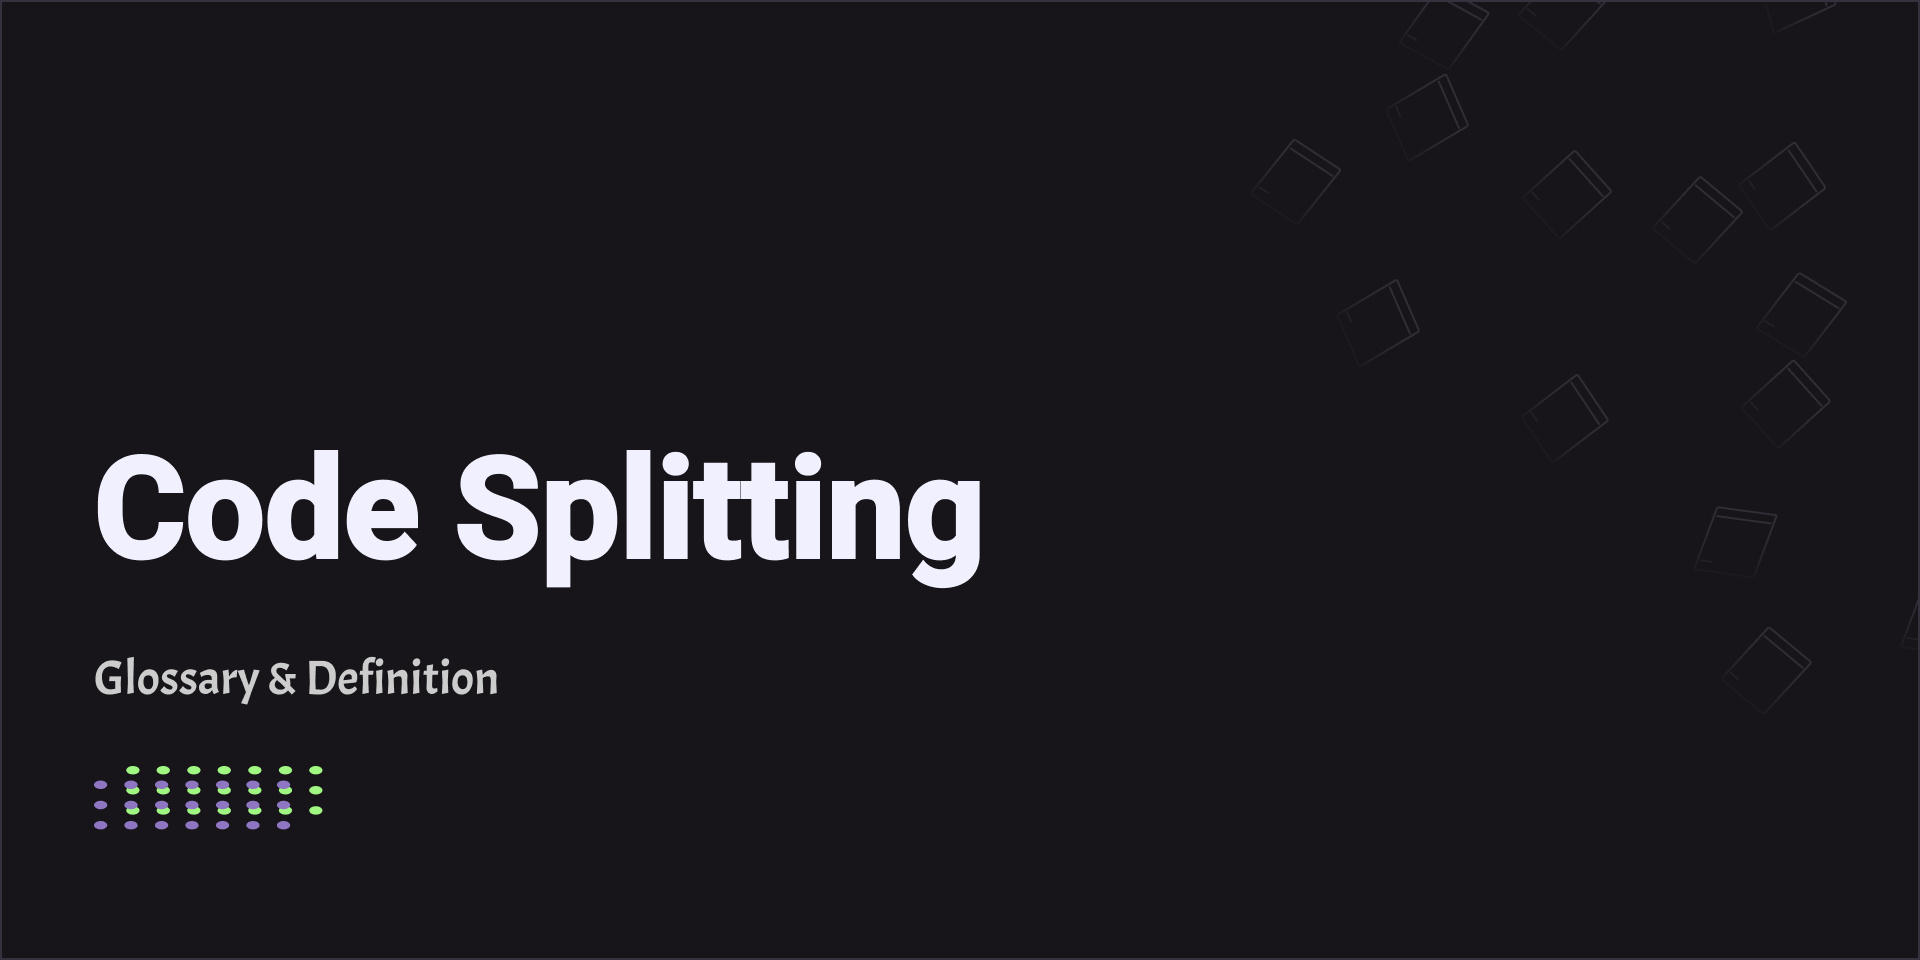 Code Splitting